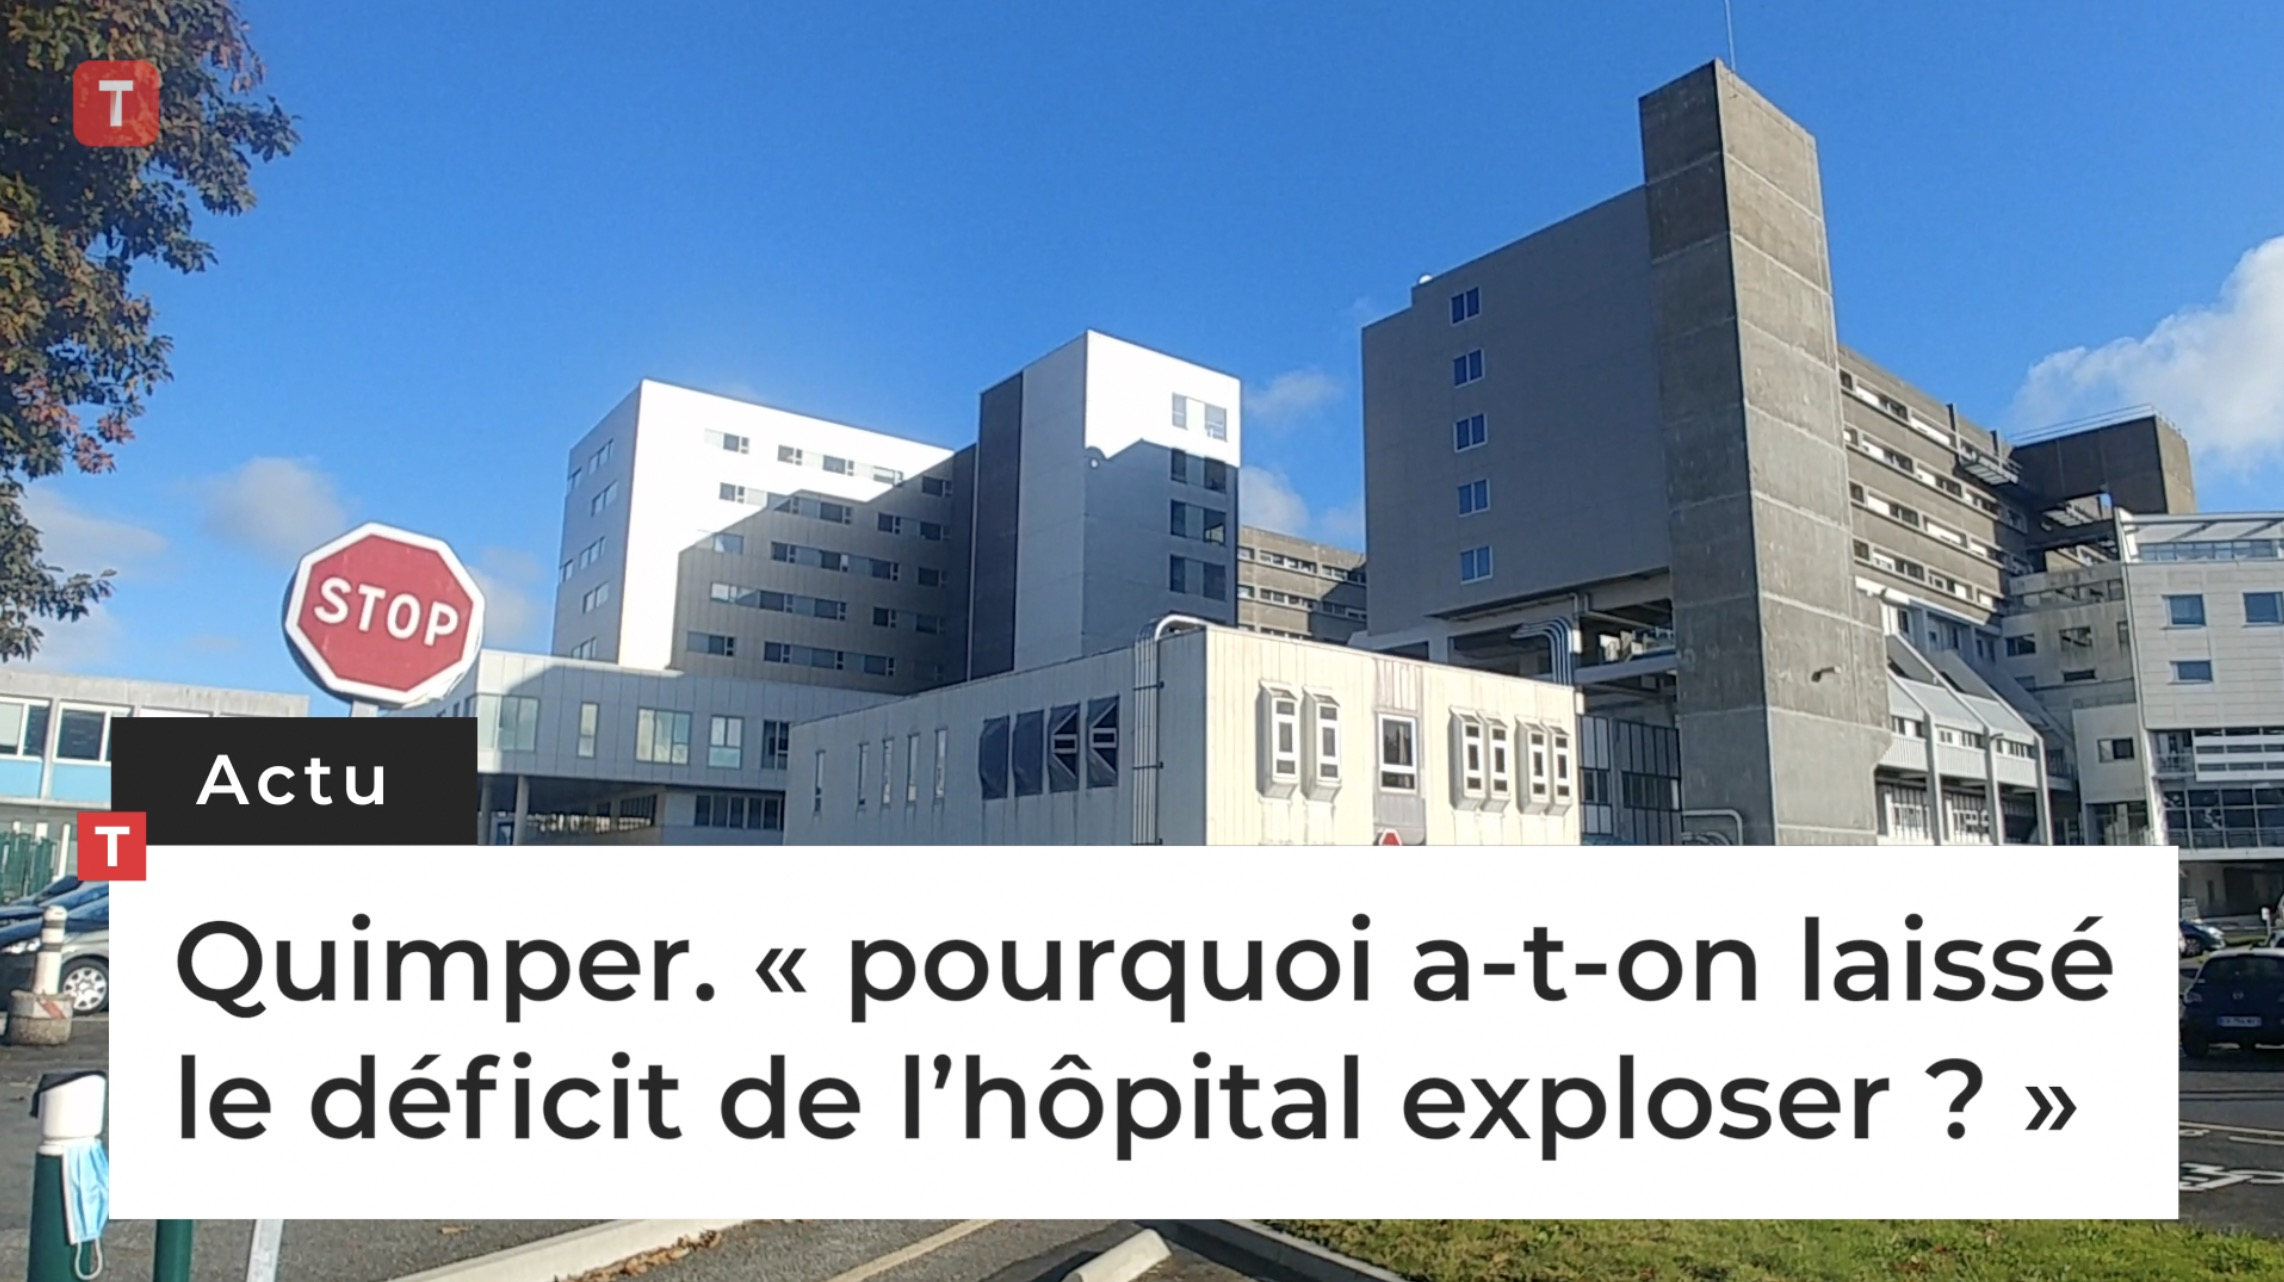 Quimper. « pourquoi a-t-on laissé le déficit de l’hôpital exploser ? » (Le Télégramme)